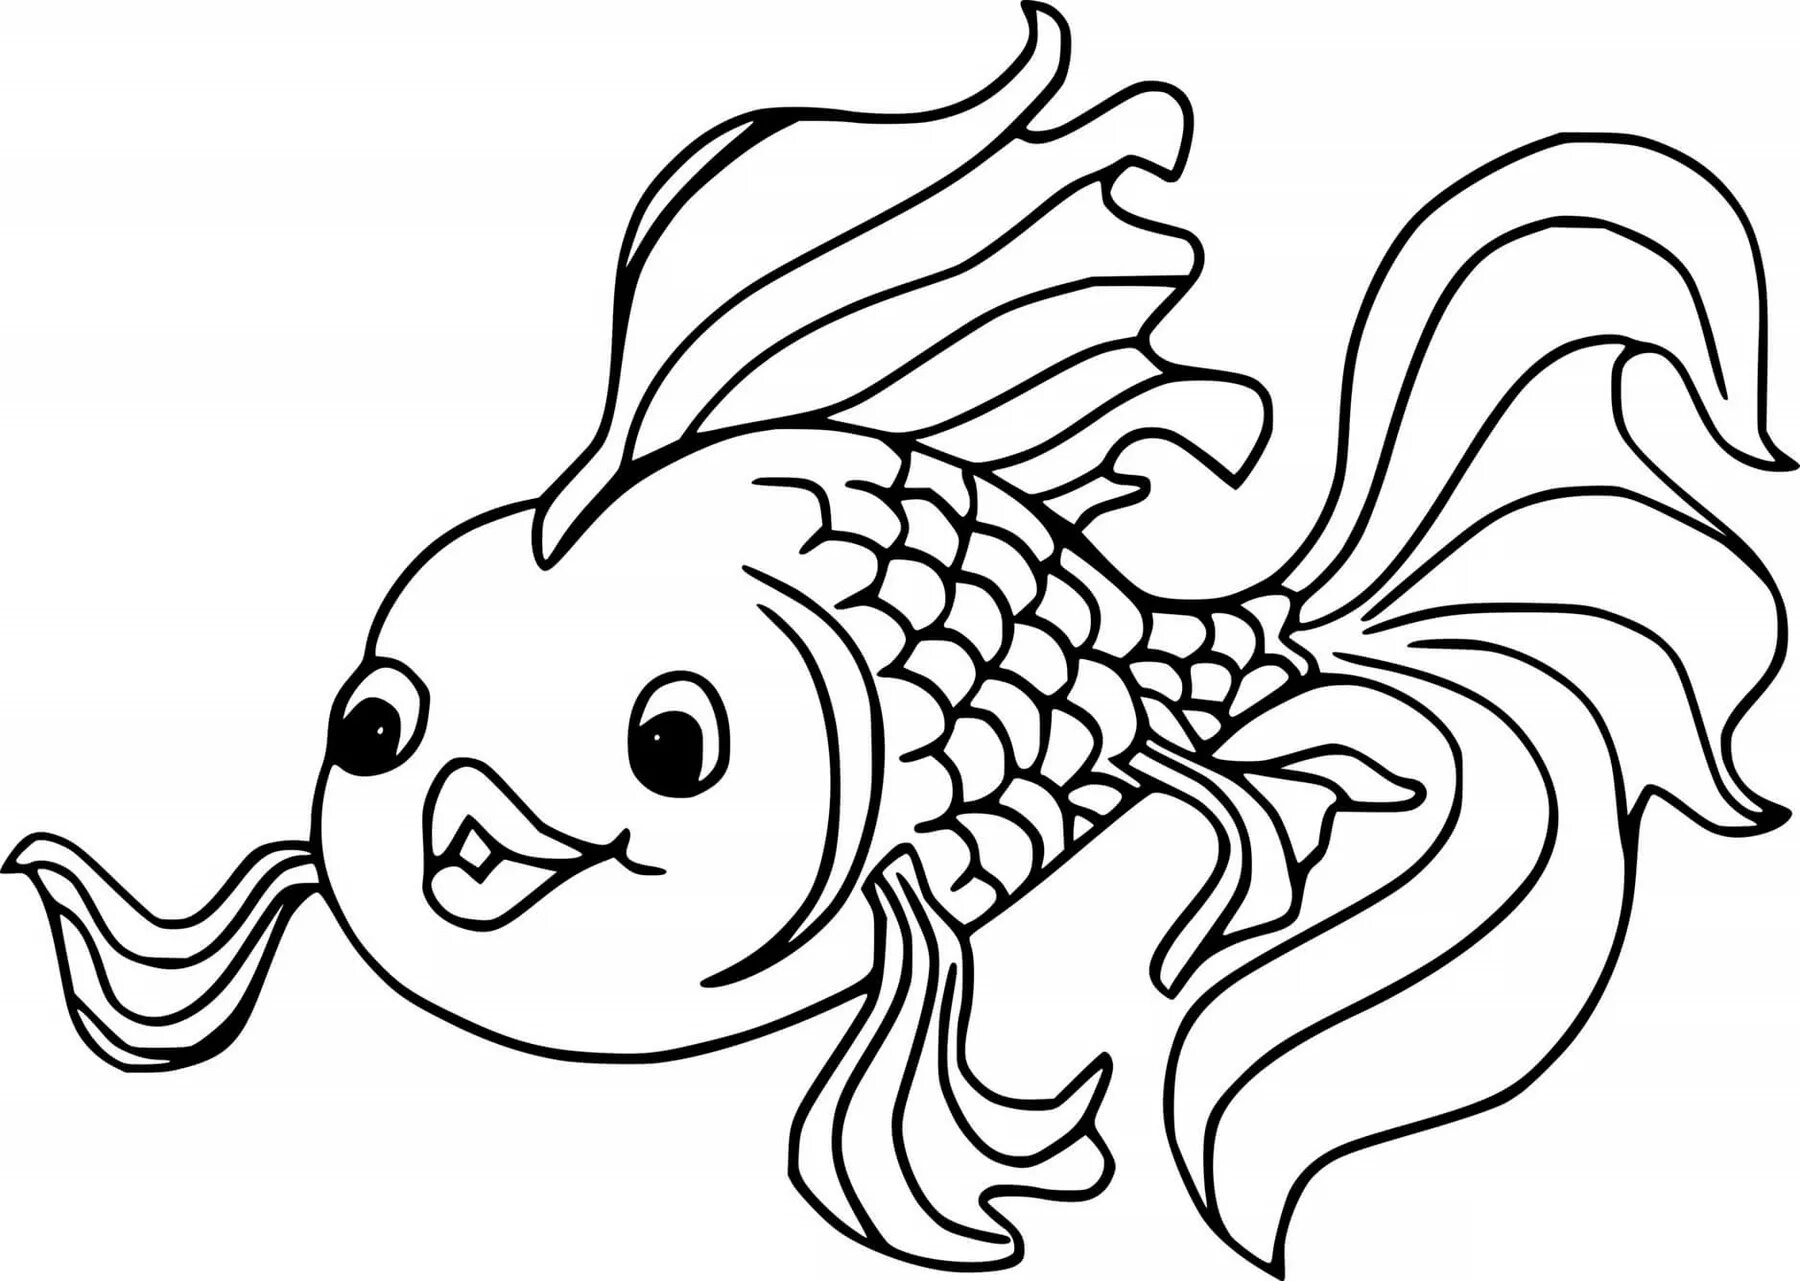 Раскраска рыбы для детей 6 лет. Раскраска рыбка. Рыбка раскраска для детей. Золотая рыбка раскраска. Рыба раскраска для детей.